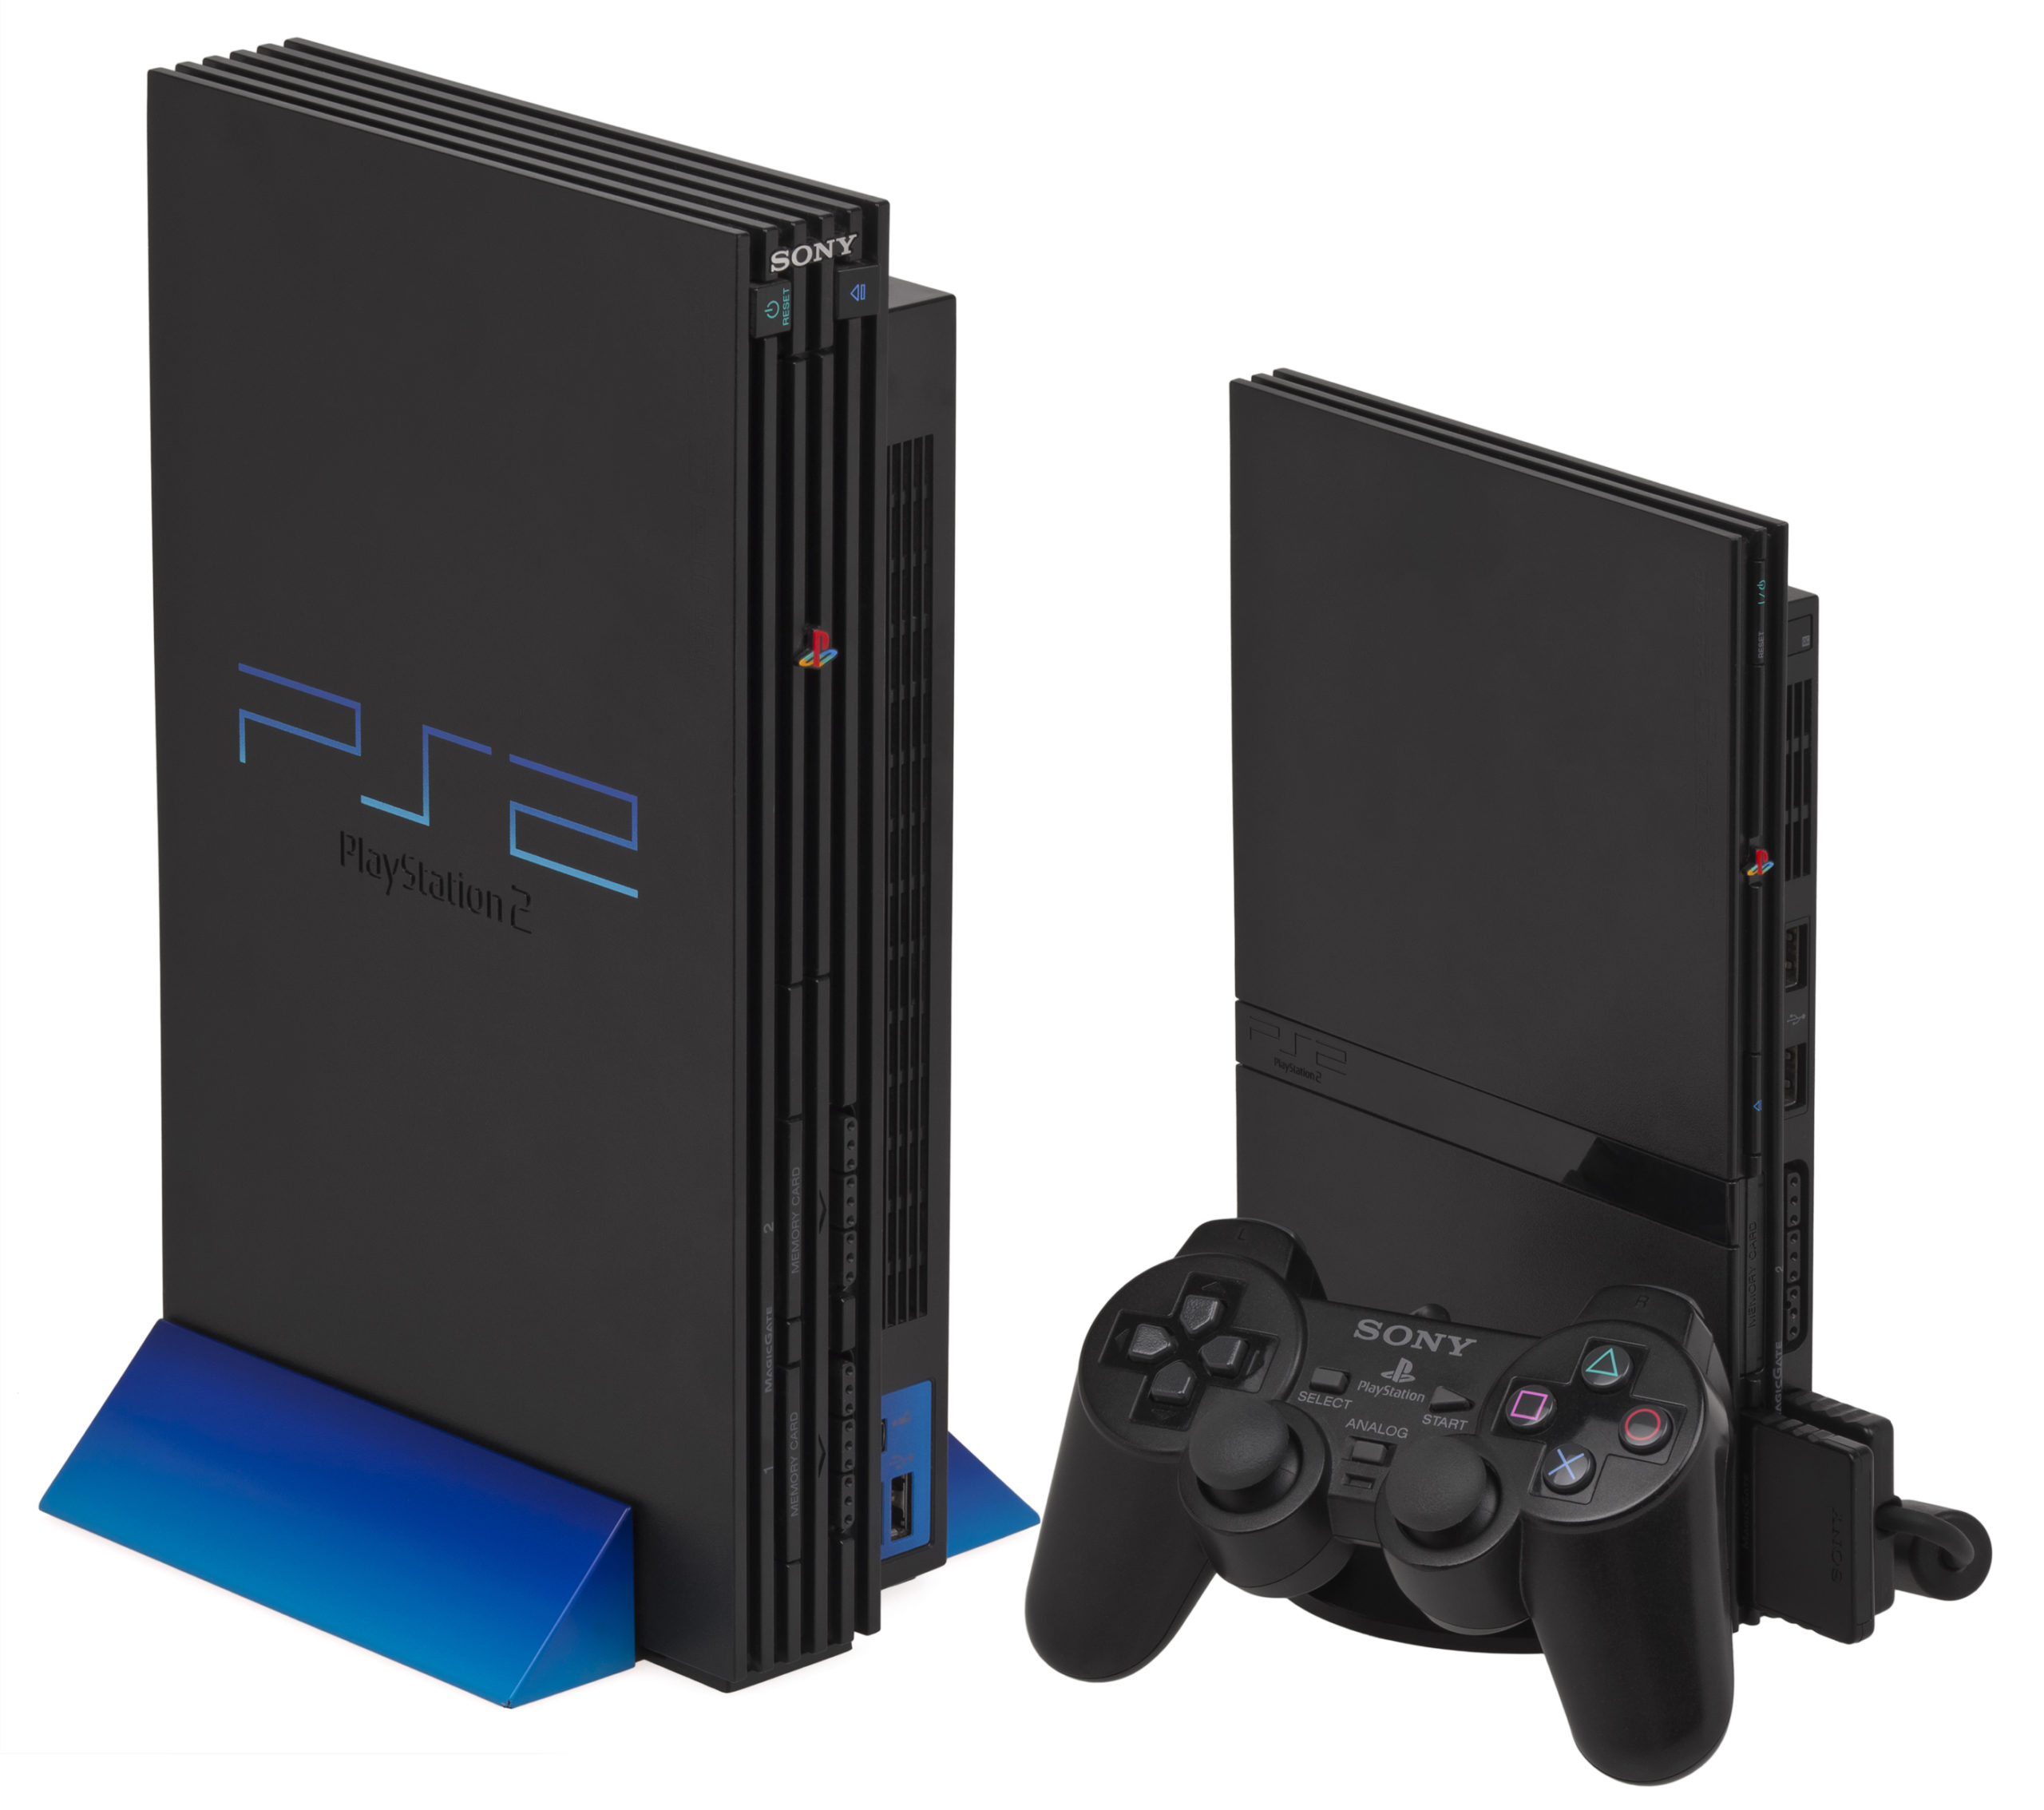 Avec plus de 155 millions d'unités vendues, c'est encore la console PS2 qui trône en tête des plus vendues de l'histoire